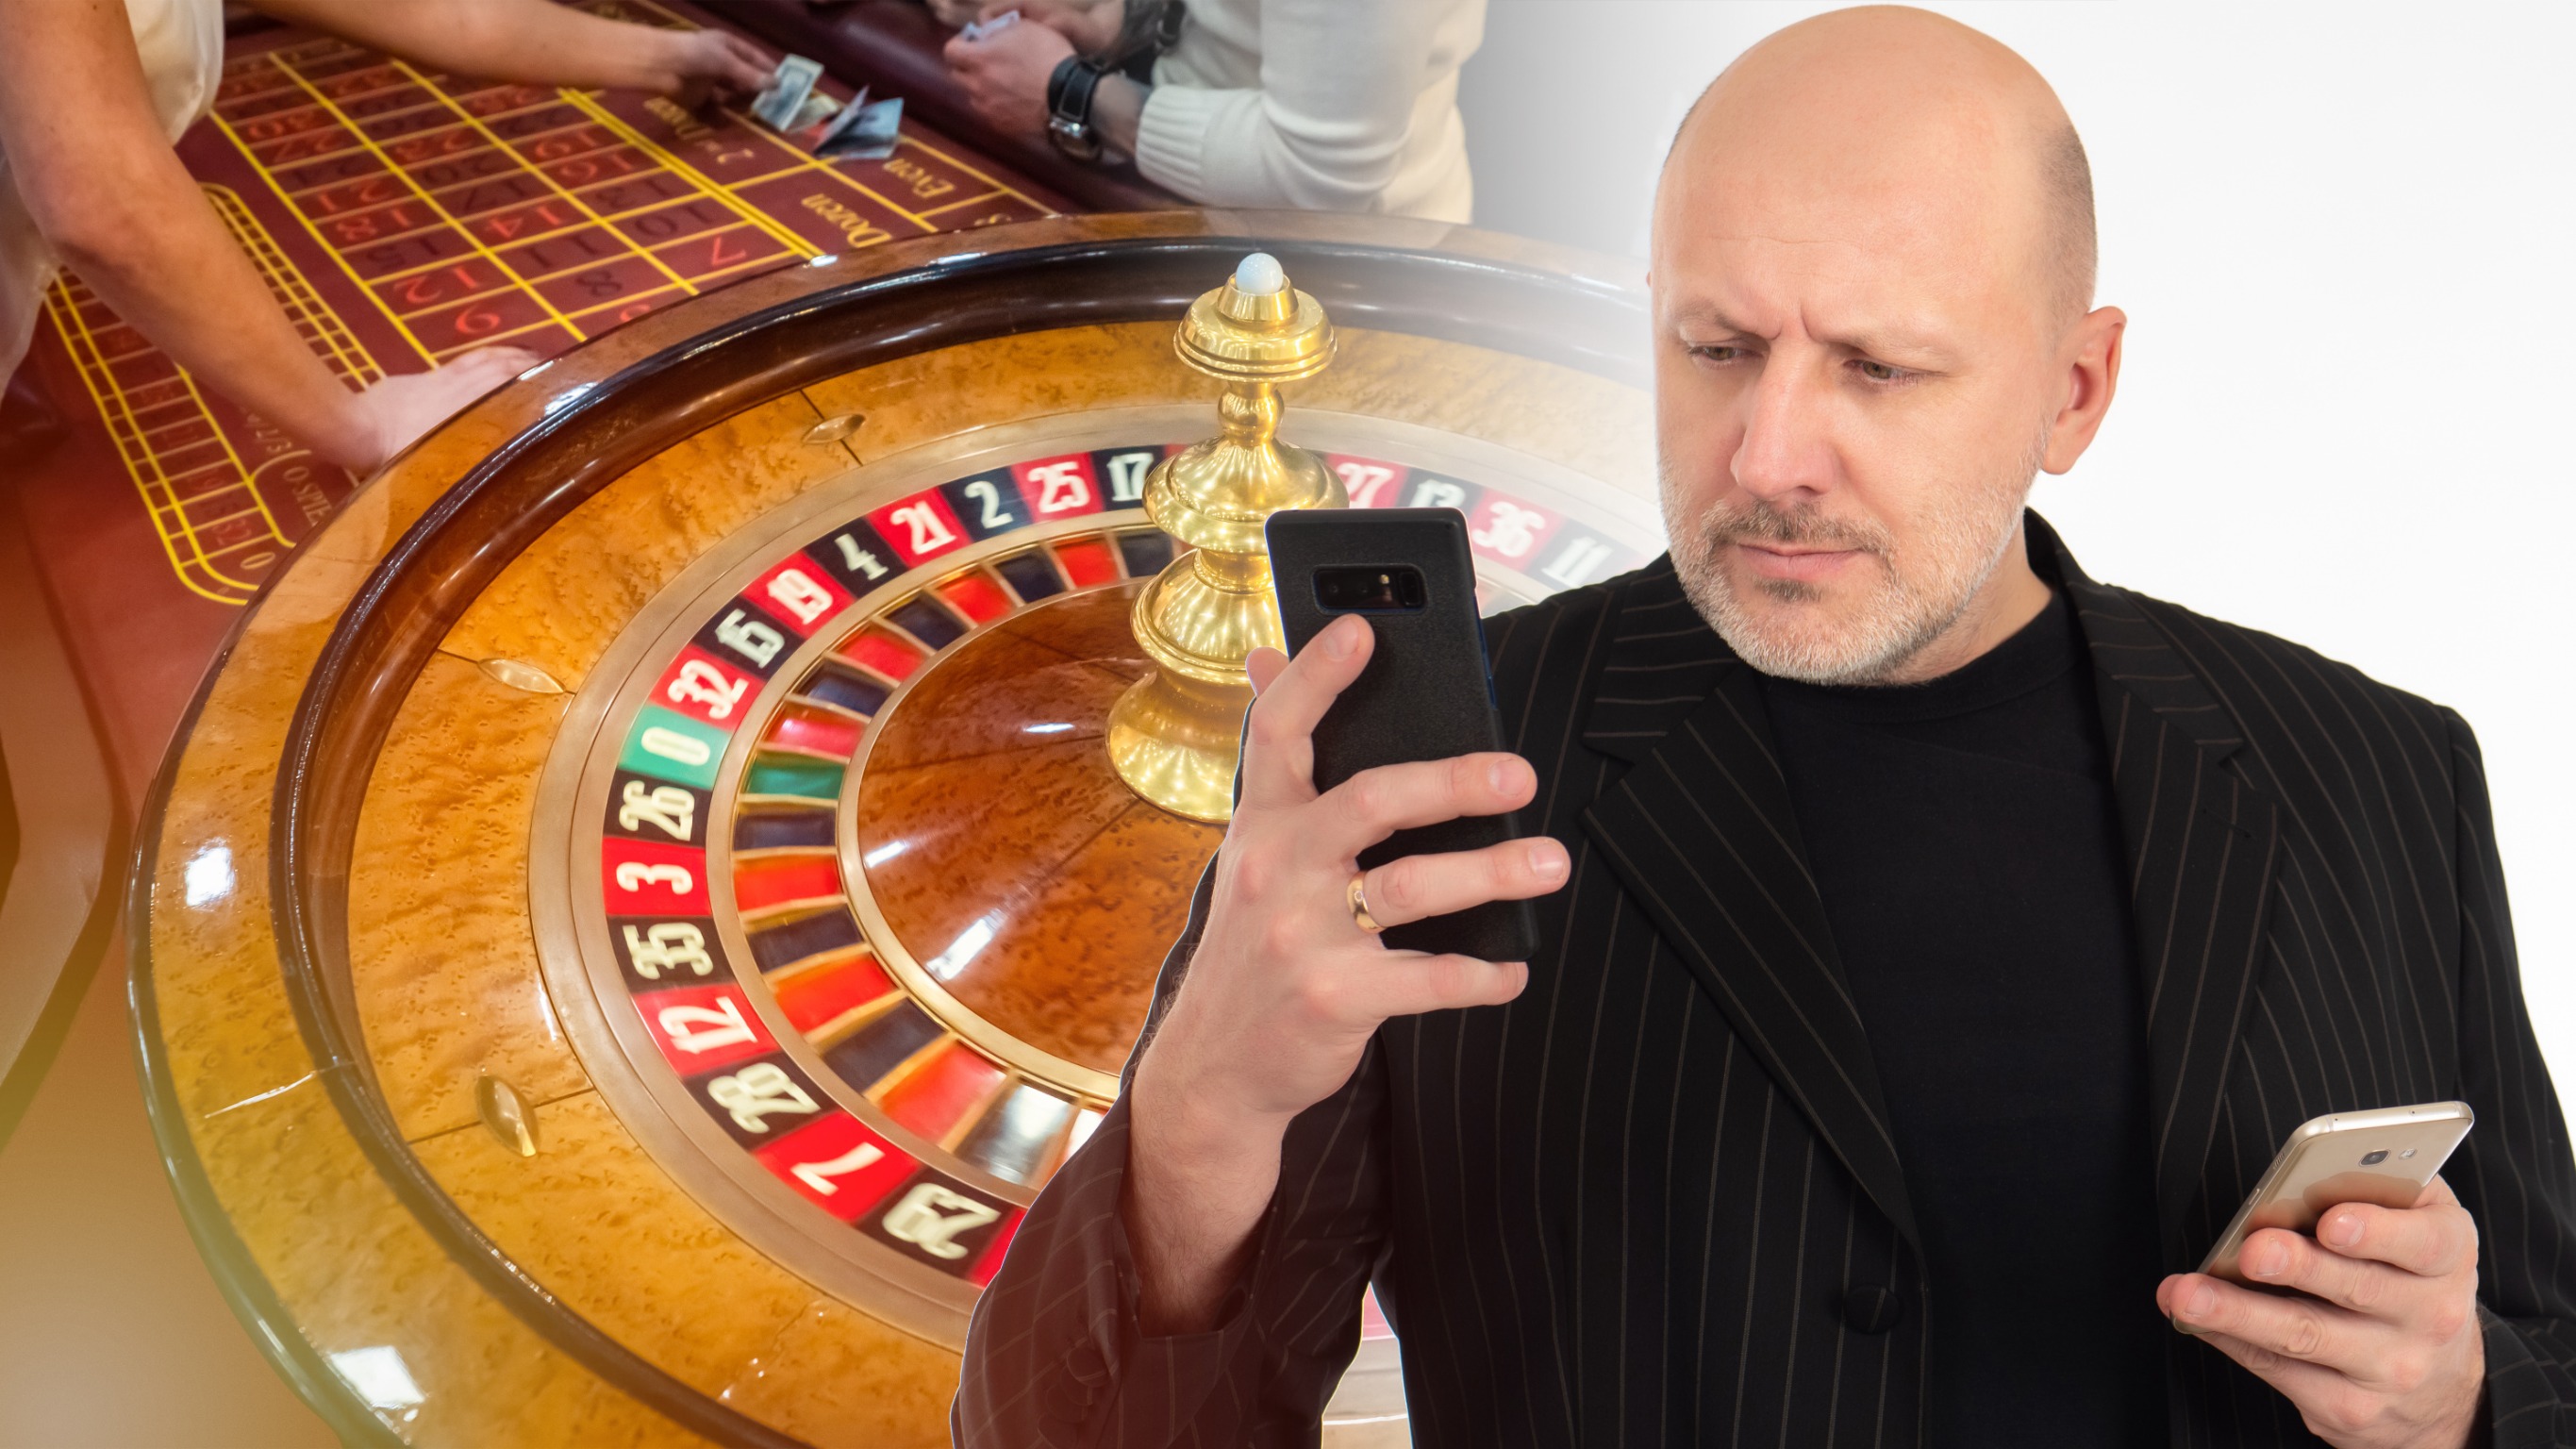 Jouer au casino en ligne : astuces pour profiter de promotions lucratives !